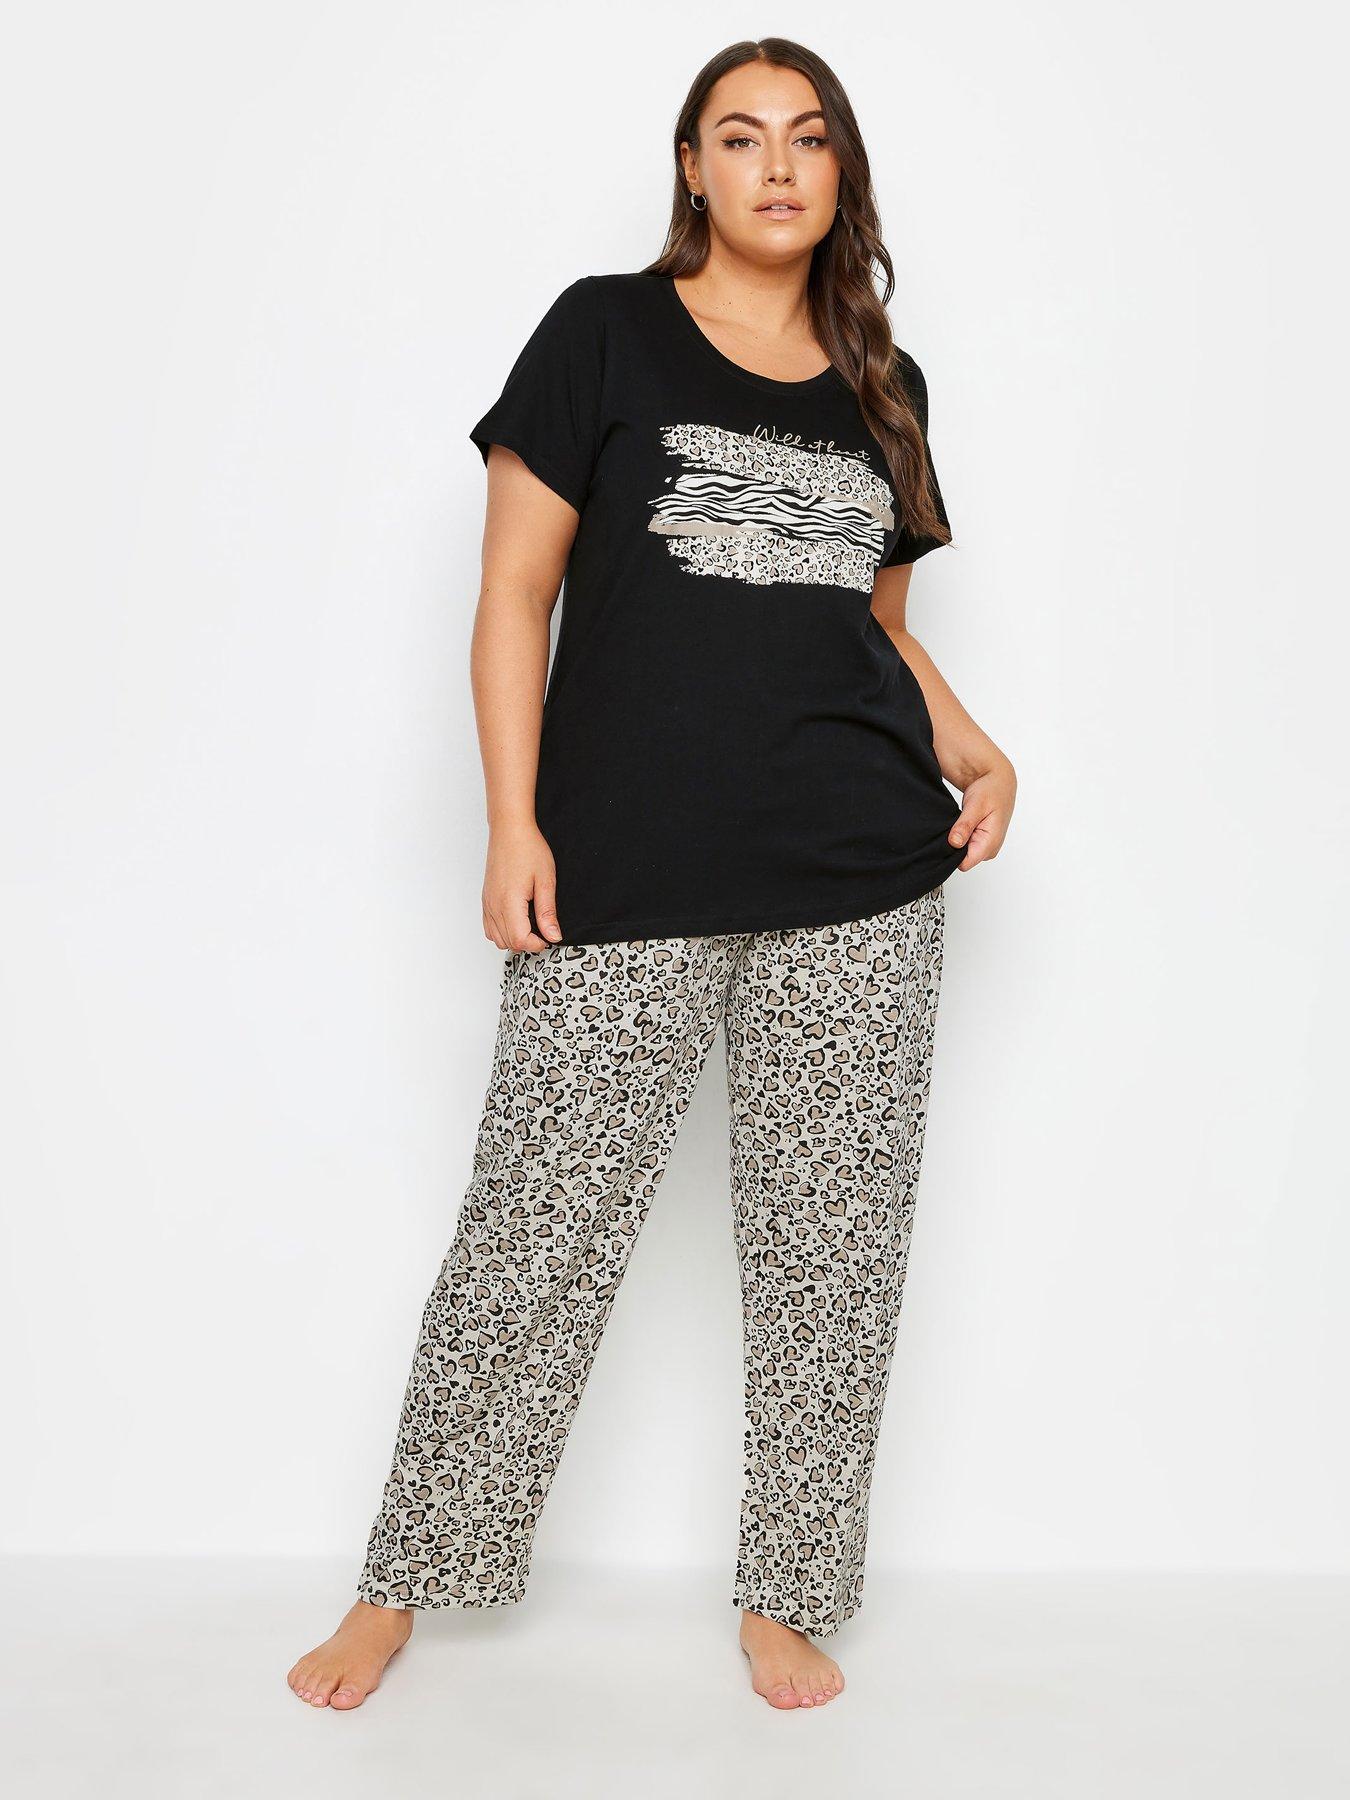 Women's Plush Pajama Pants - Petite to Plus Size Pajamas (Leopard, Medium)  